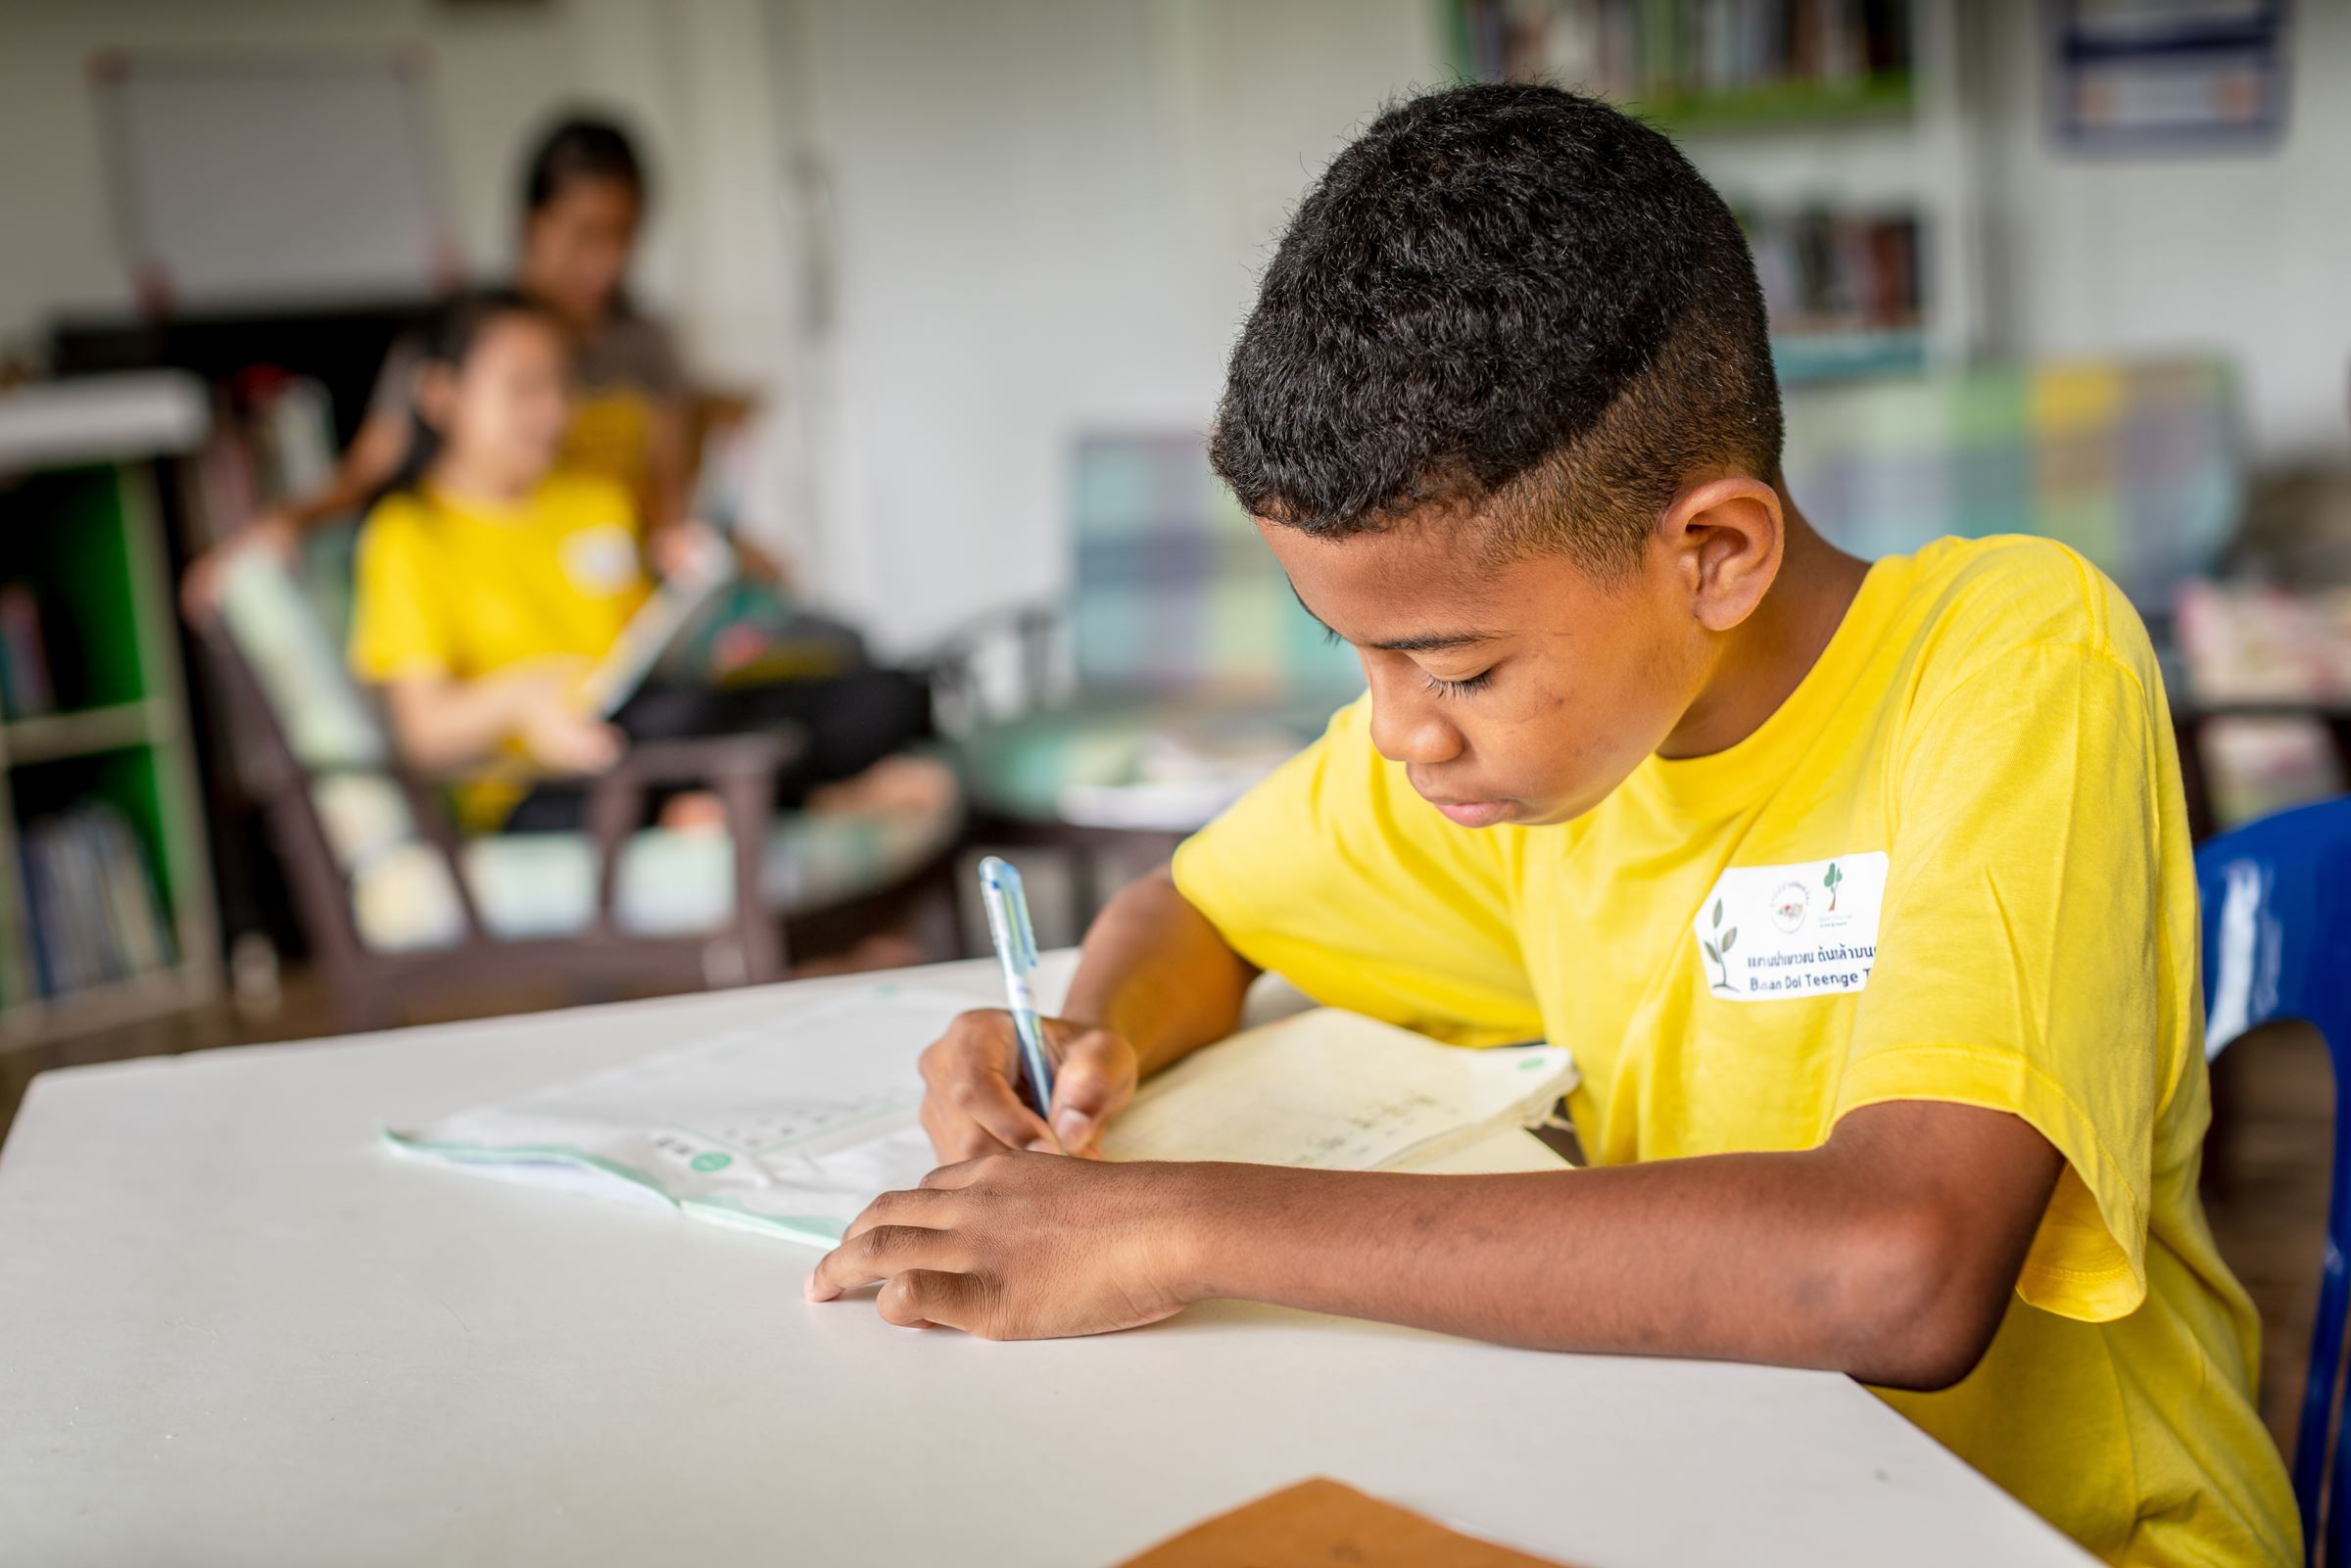 Ein Junge in gelbem T-Shirt beugt sich über ein Heft und schreibt. (Quelle: Jakob Studnar)